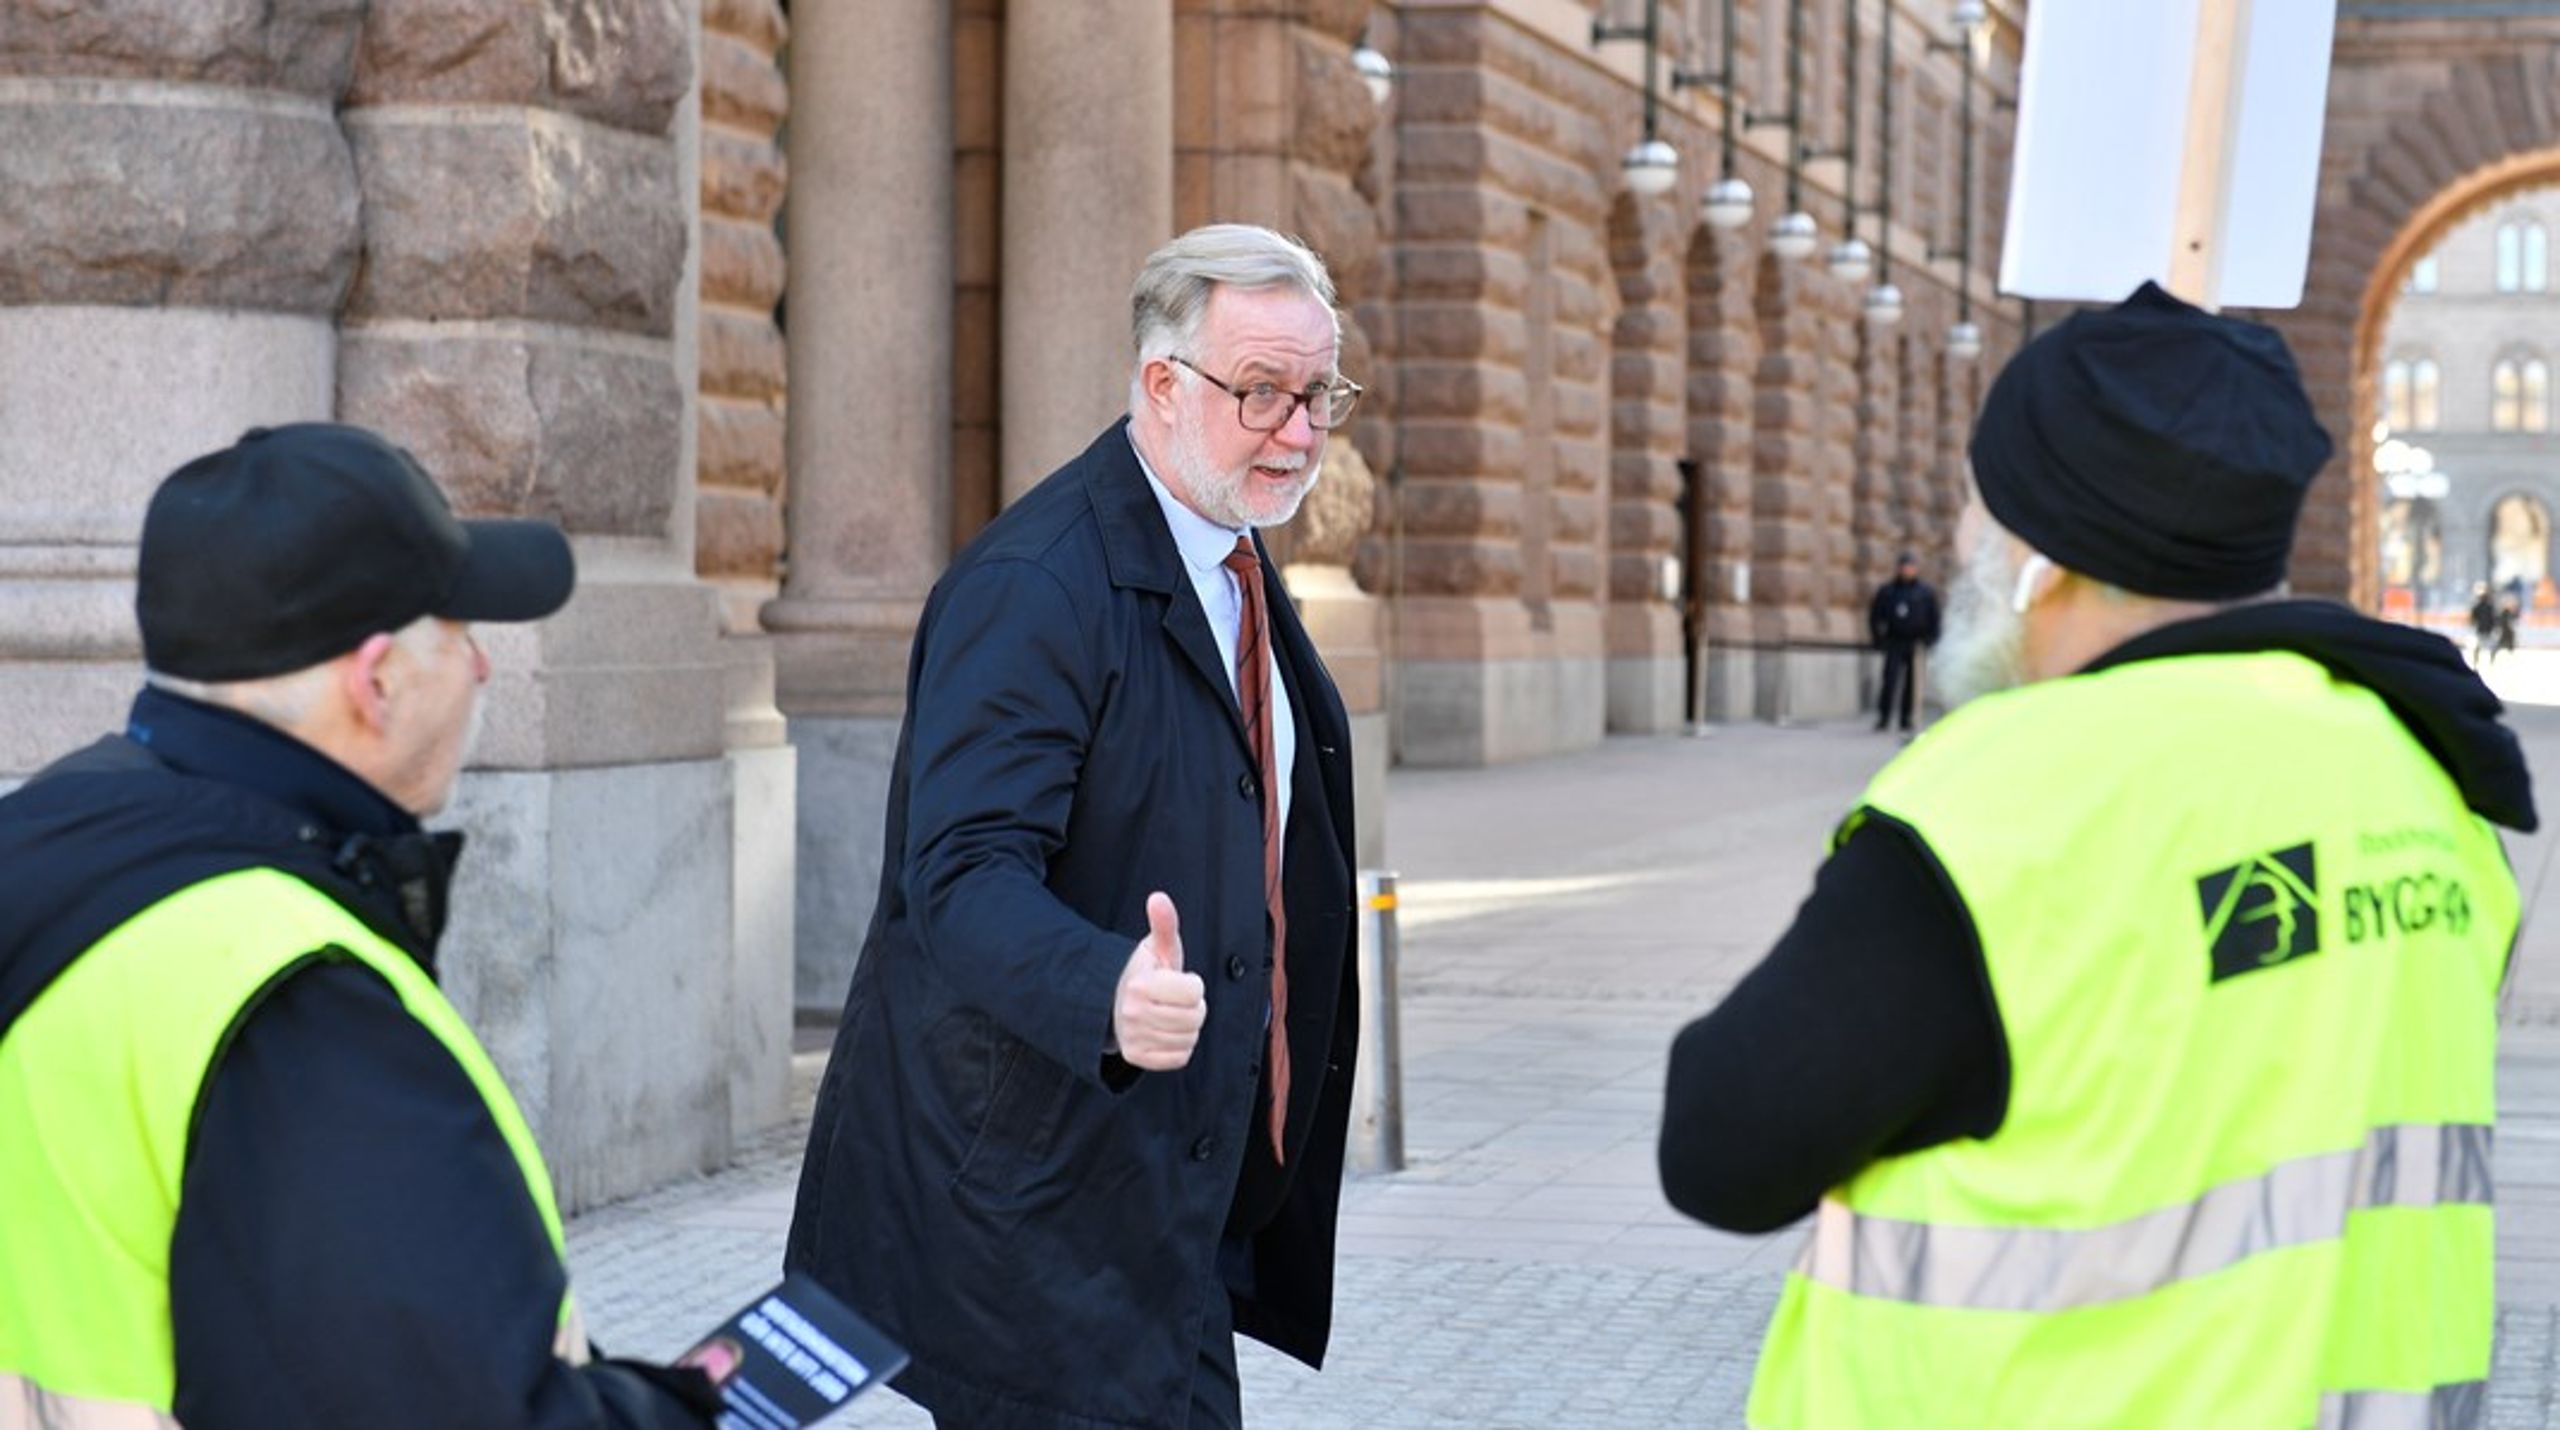 Arbetsmarknads- och integrationsminister&nbsp;Johan Pehrson mötte protesterande byggnadsarbetare utanför riksdagshuset&nbsp;på tisdagsmorgonen.